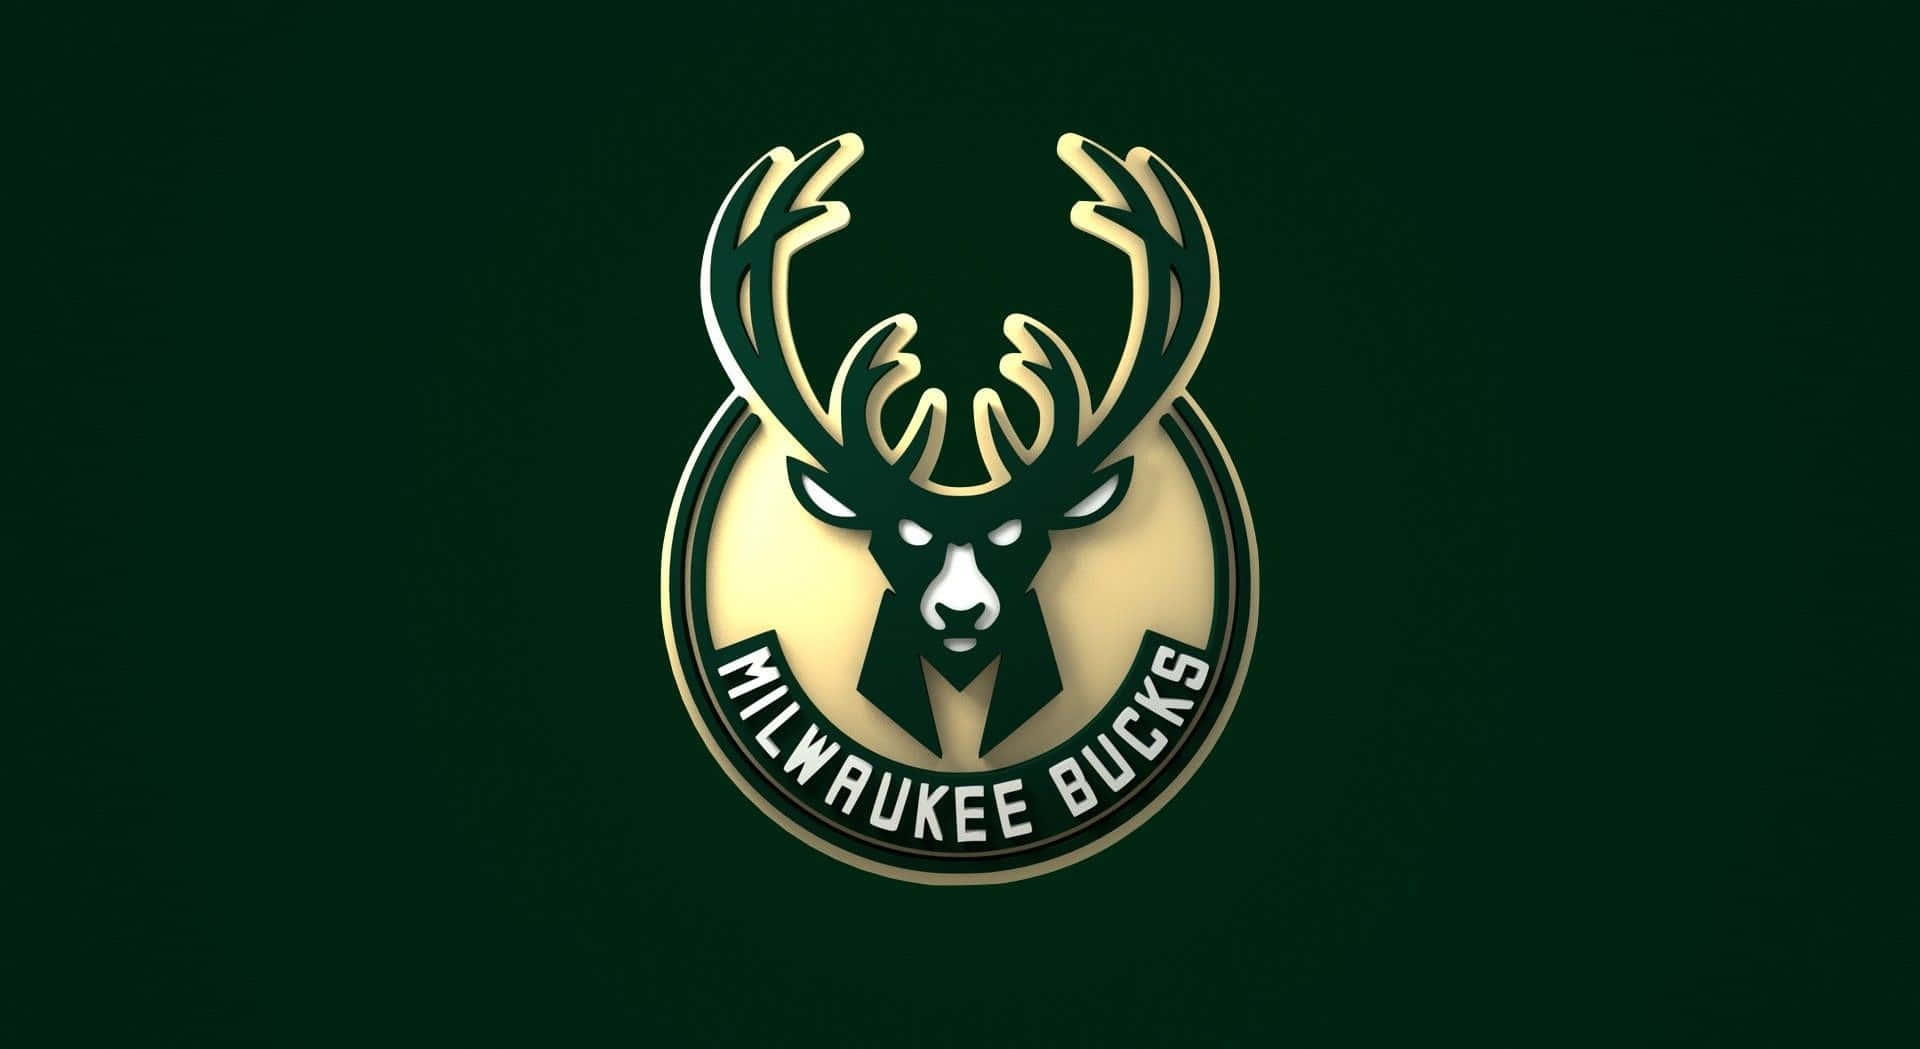 Daslogo Der Milwaukee Bucks, Das Ein Ikonisches Sportteam In Der Nba Repräsentiert. Wallpaper